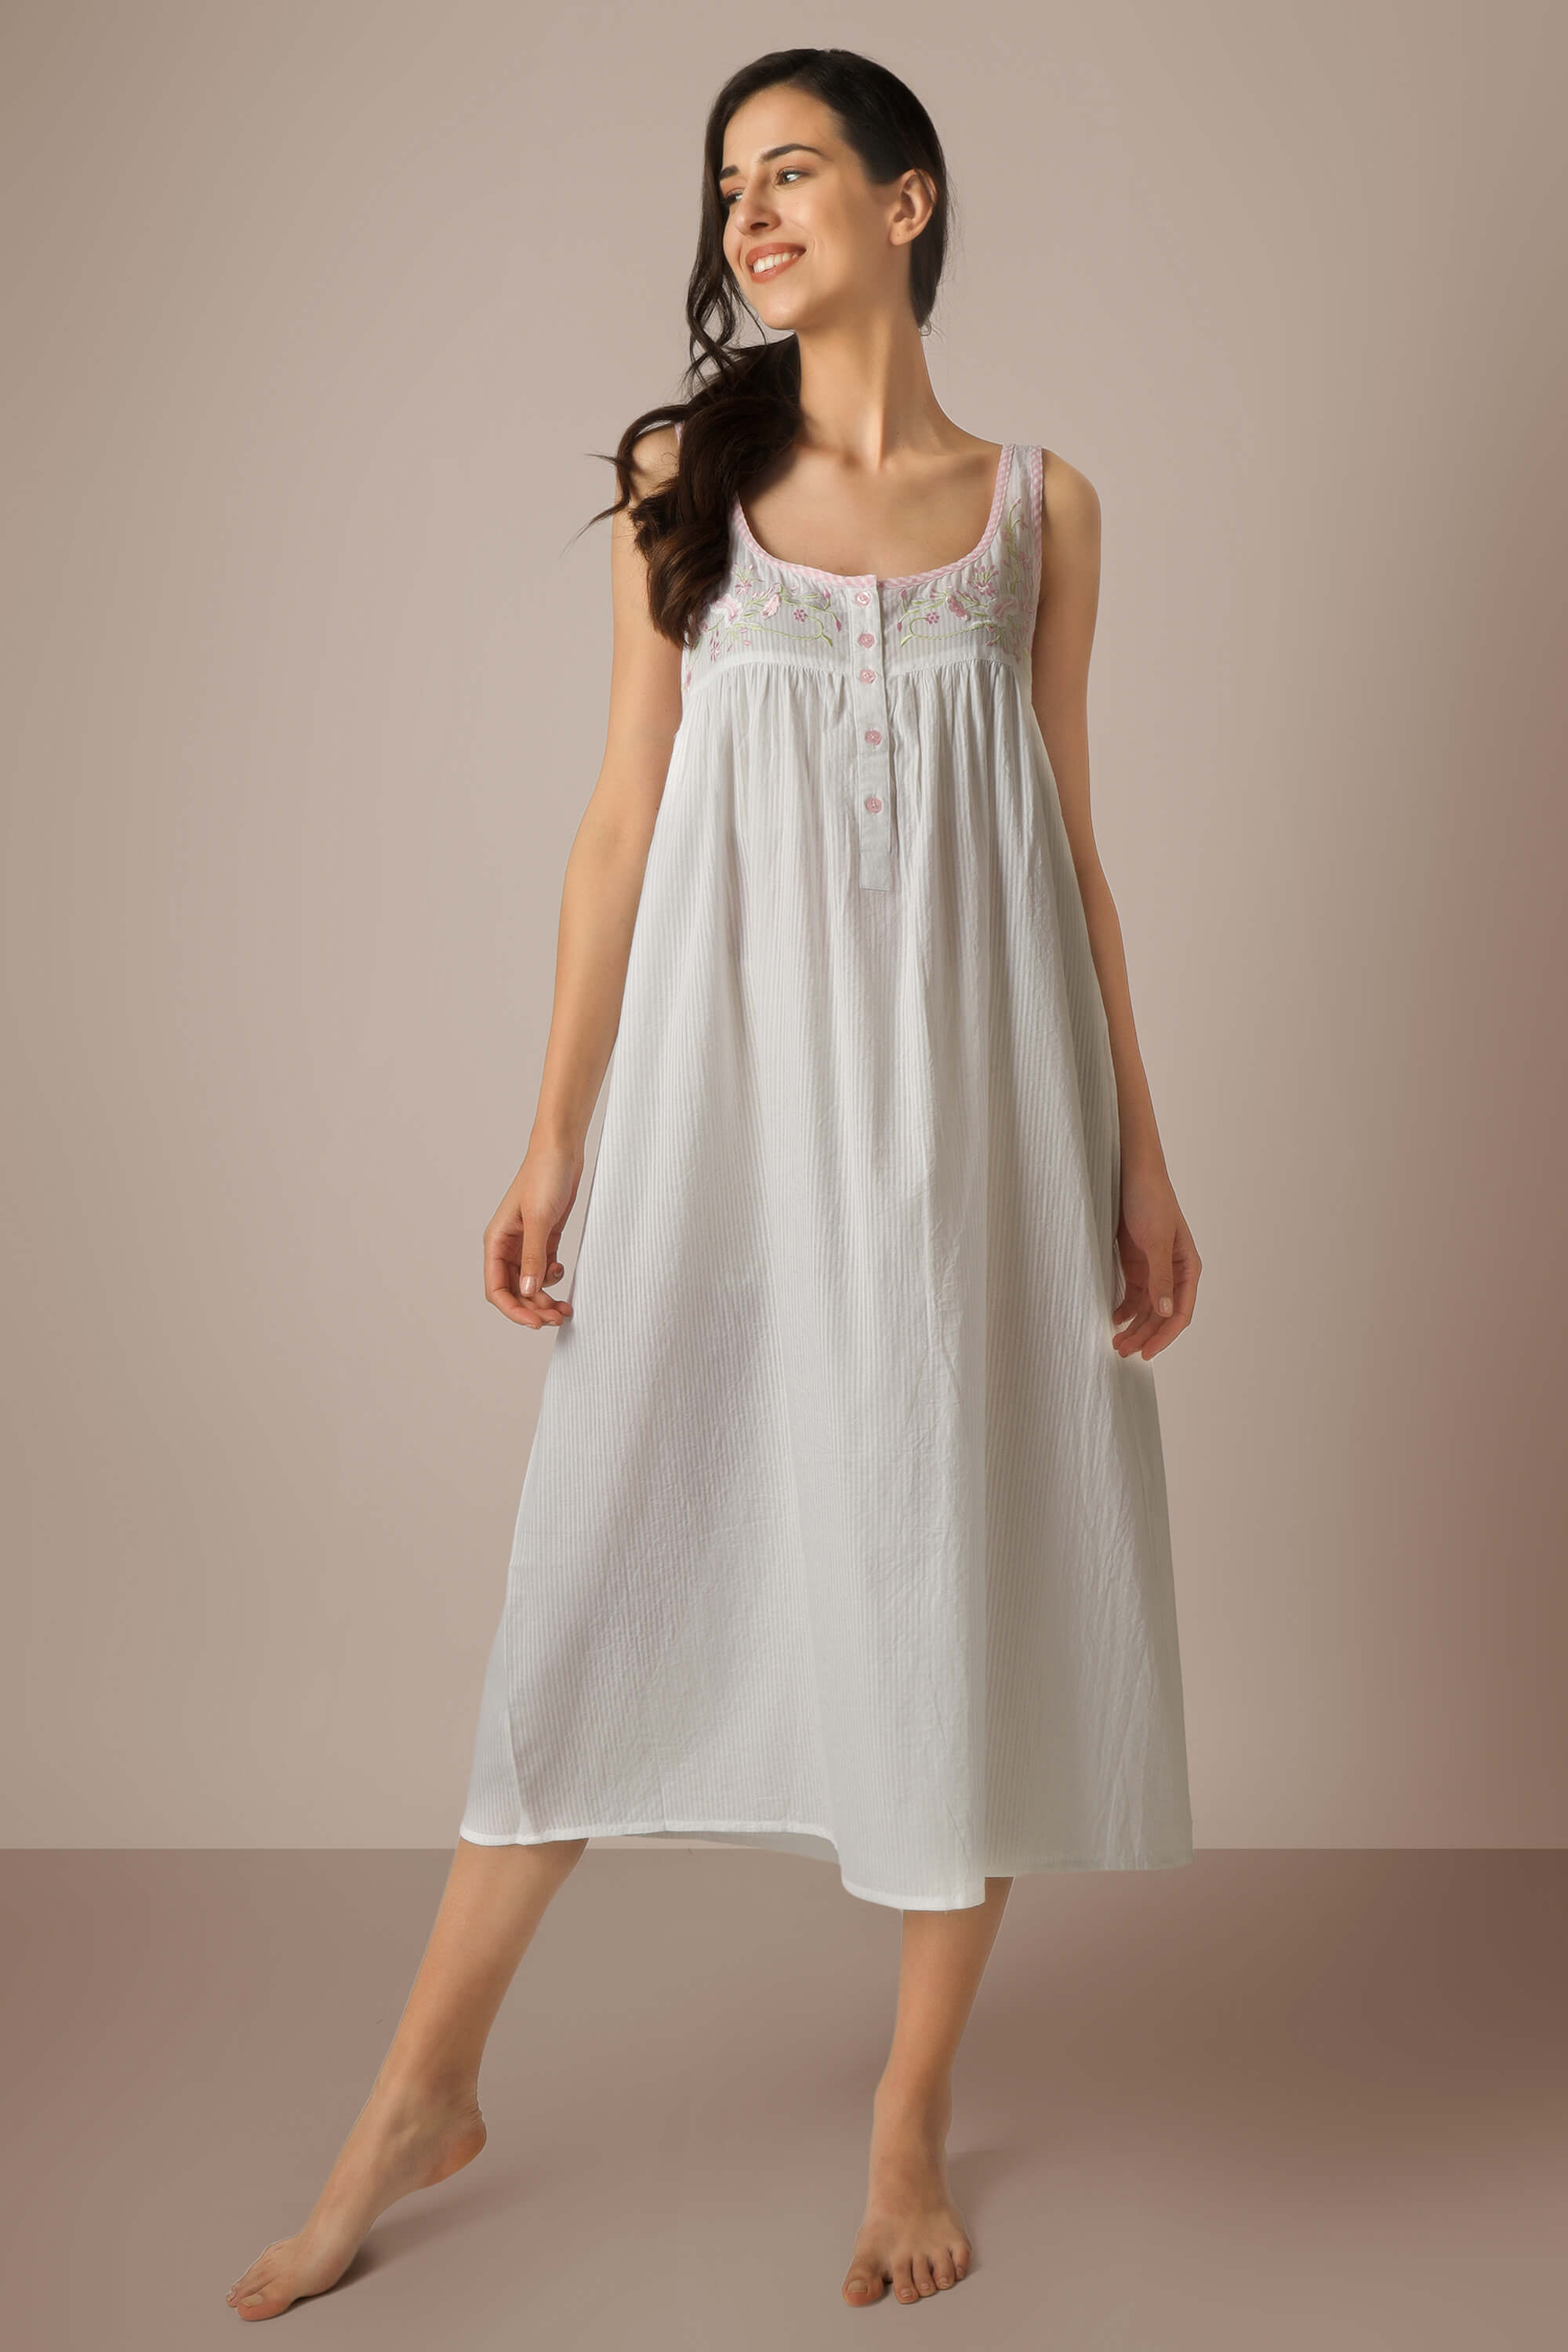 Brianna Ladies Cotton Nightgown